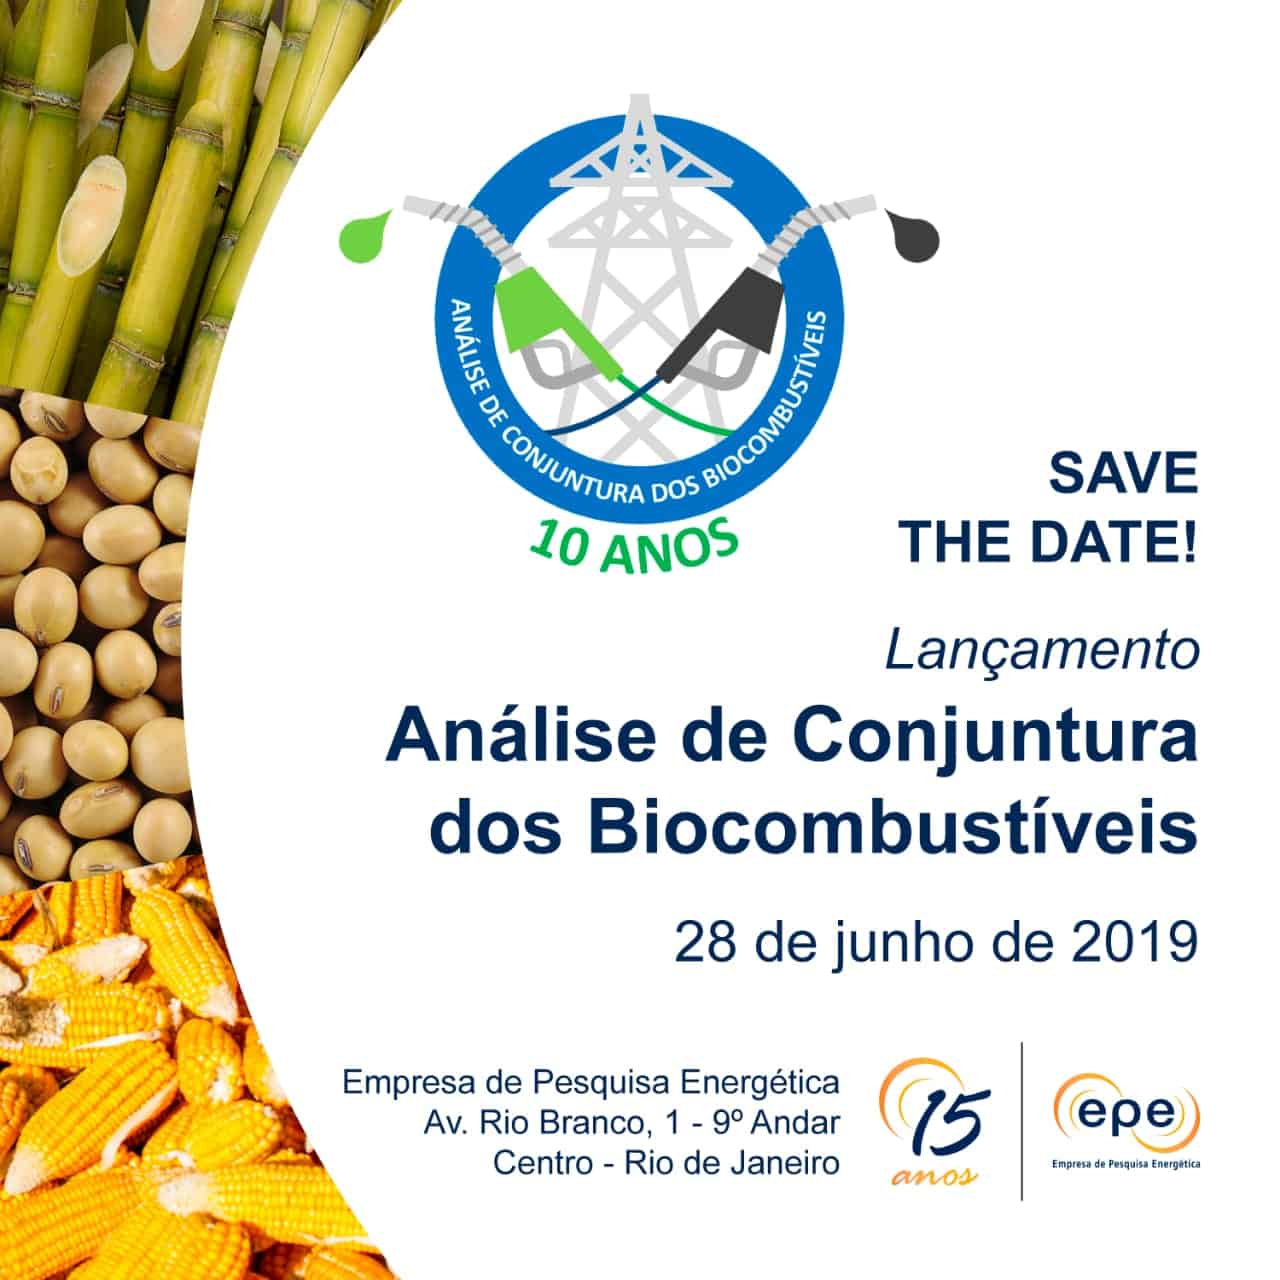 Lançamento: Análise de Conjuntura dos Biocombustíveis - 10 Anos @ Rio de Janeiro-RJ